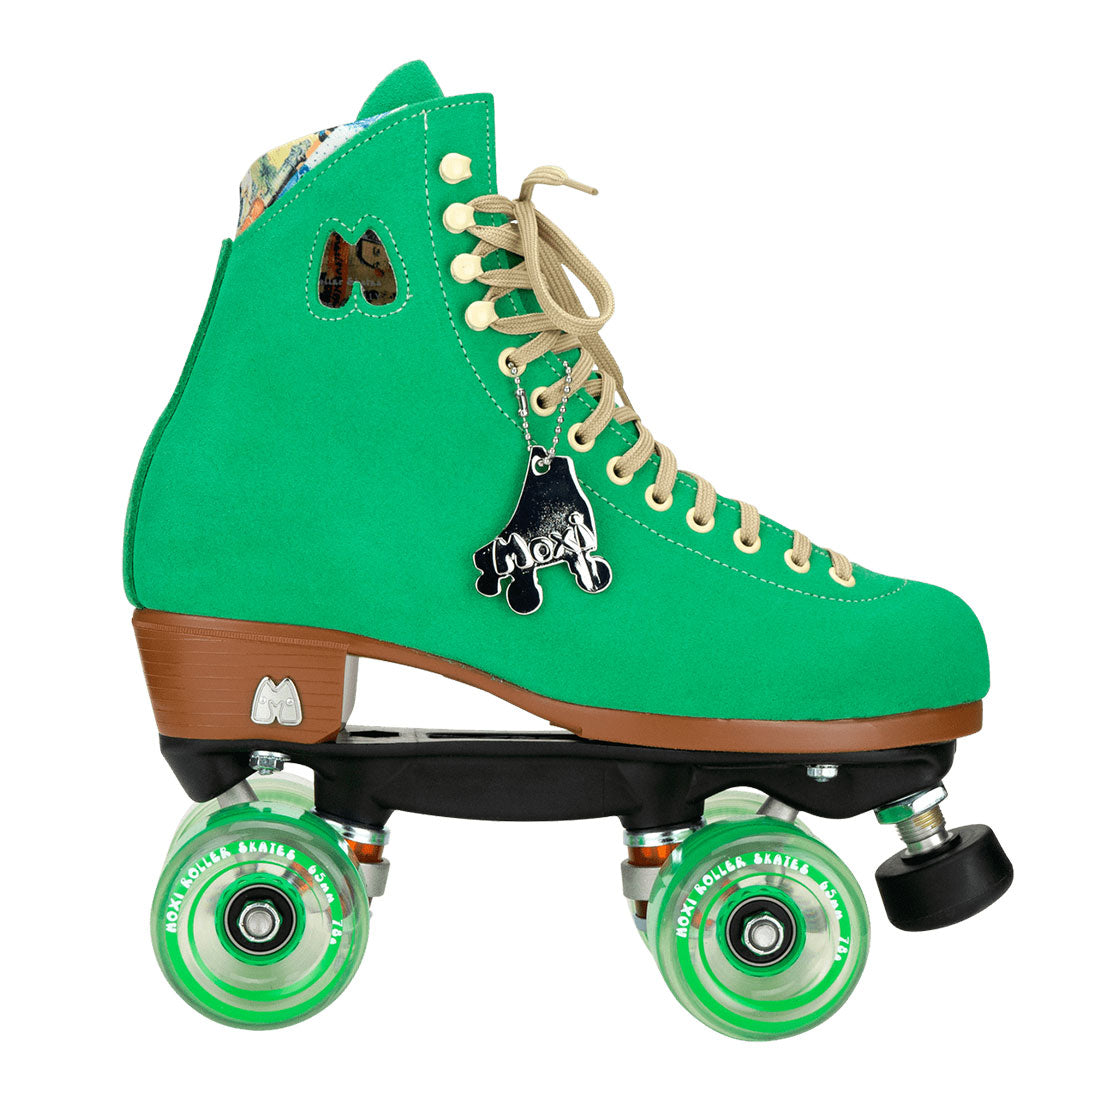 Moxi Lolly Skate - Green Apple Roller Skates